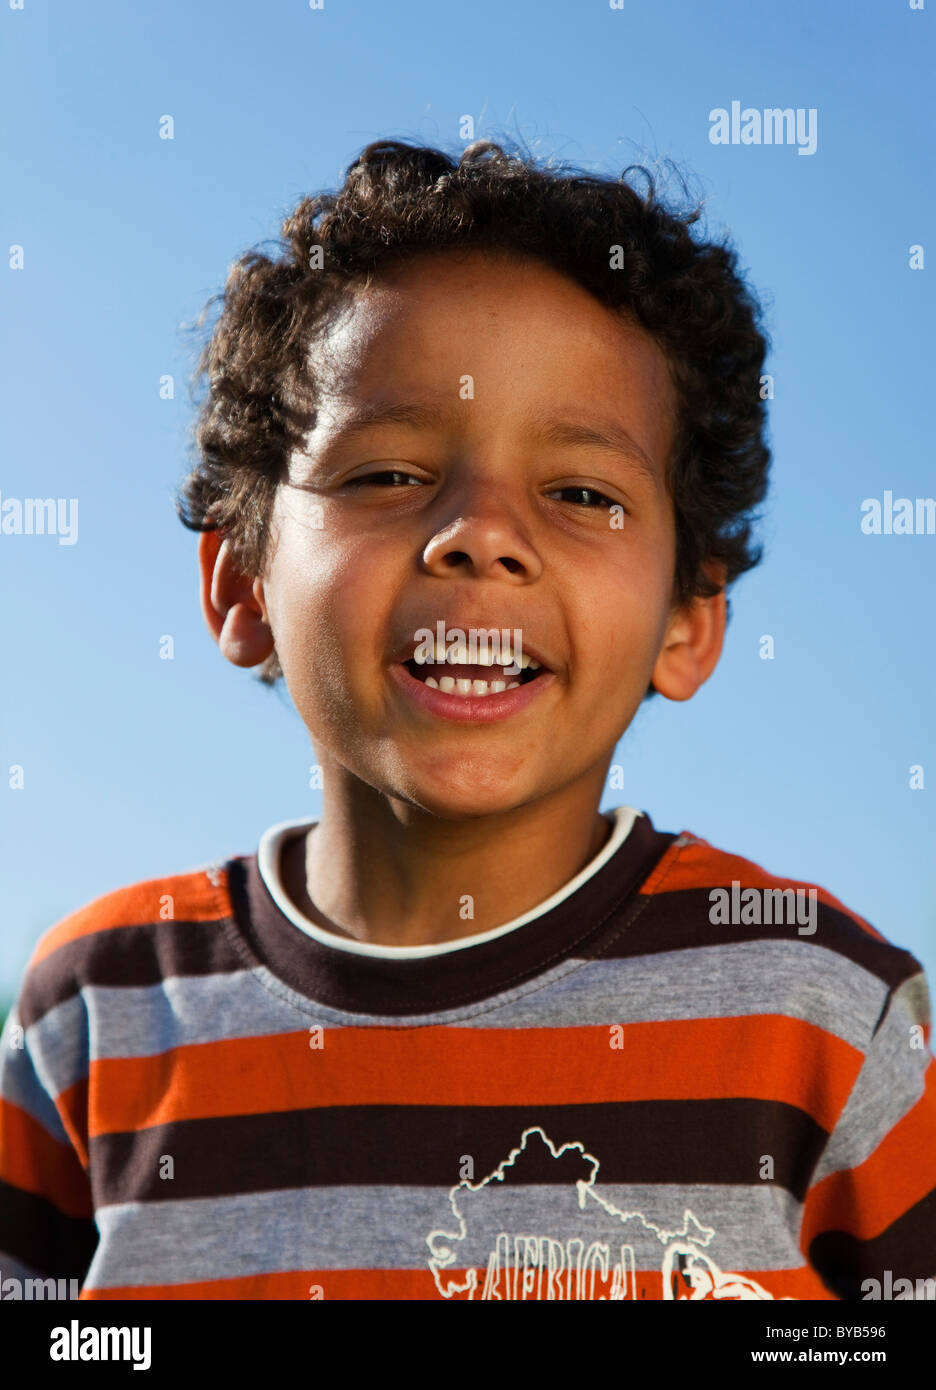 Niño con piel de color oscuro, Retrato Fotografía de stock - Alamy